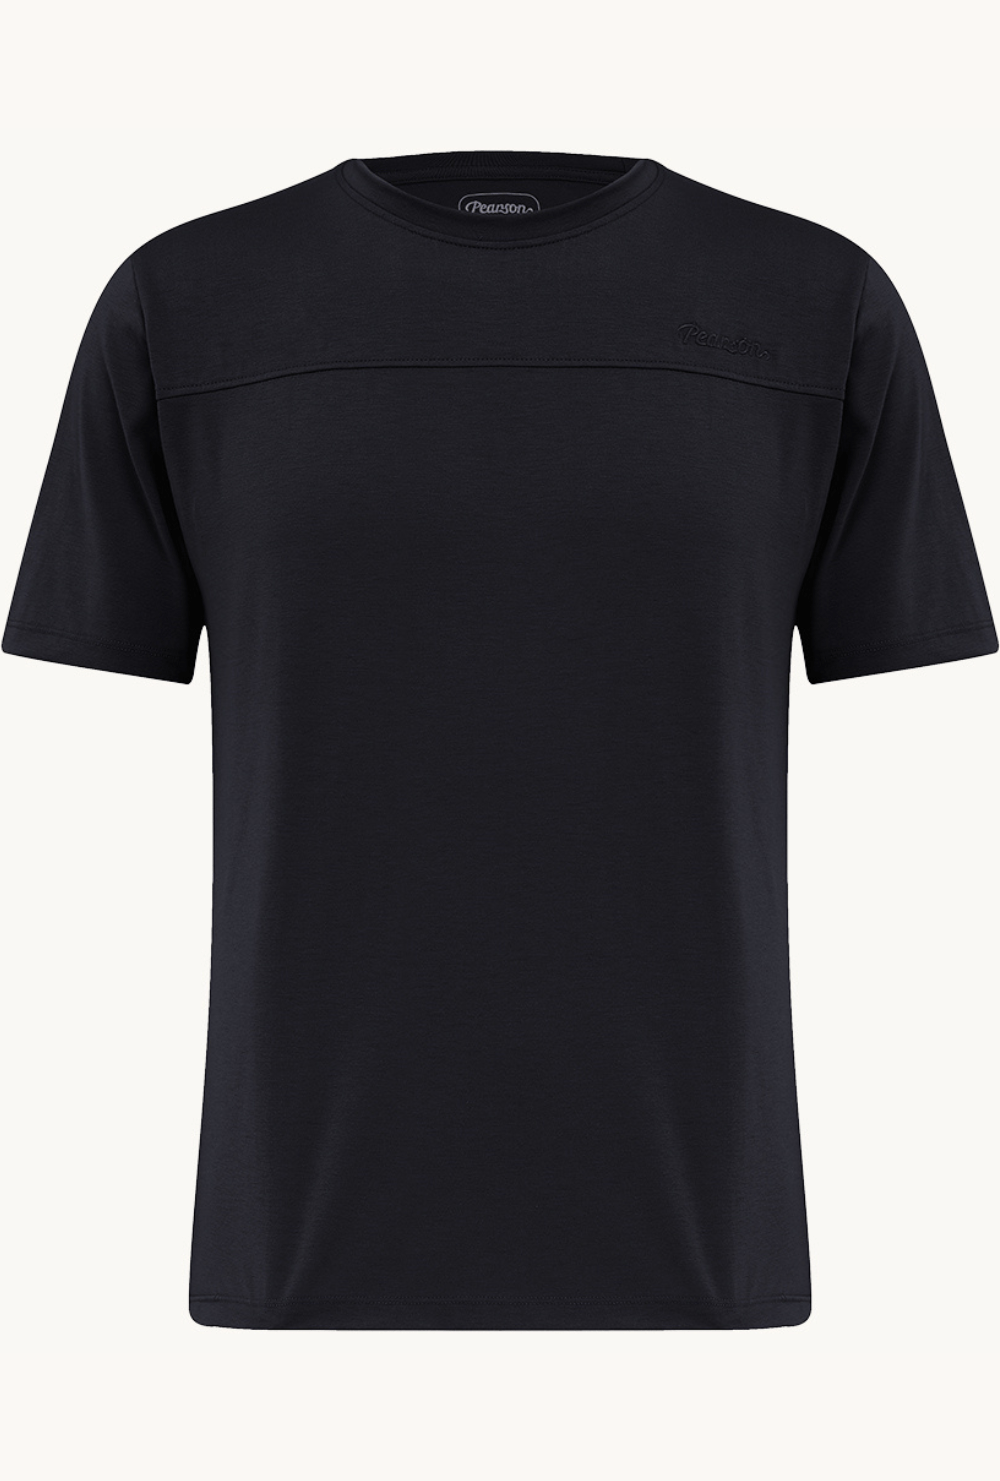 Pearson 1860  High DaysandHolidays - Cycling T-shirt  Black / X-large